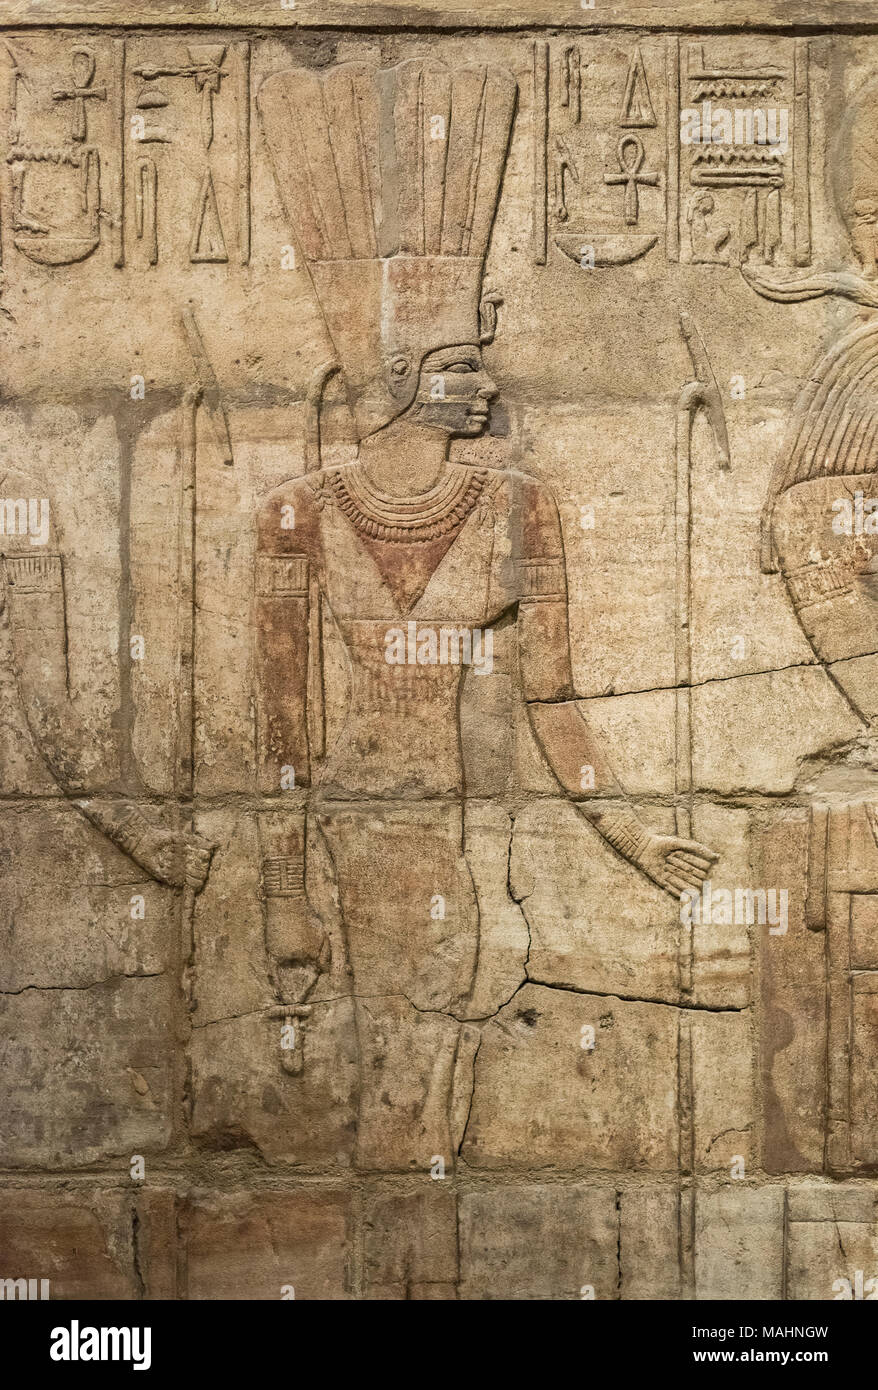 Oxford. In Inghilterra. Santuario di Re Taharqa (690-664 BC), particolare della dea Anukis (Anuket), Ashmolean Museum. Dettaglio del bassorilievo sulla parete ovest del Foto Stock